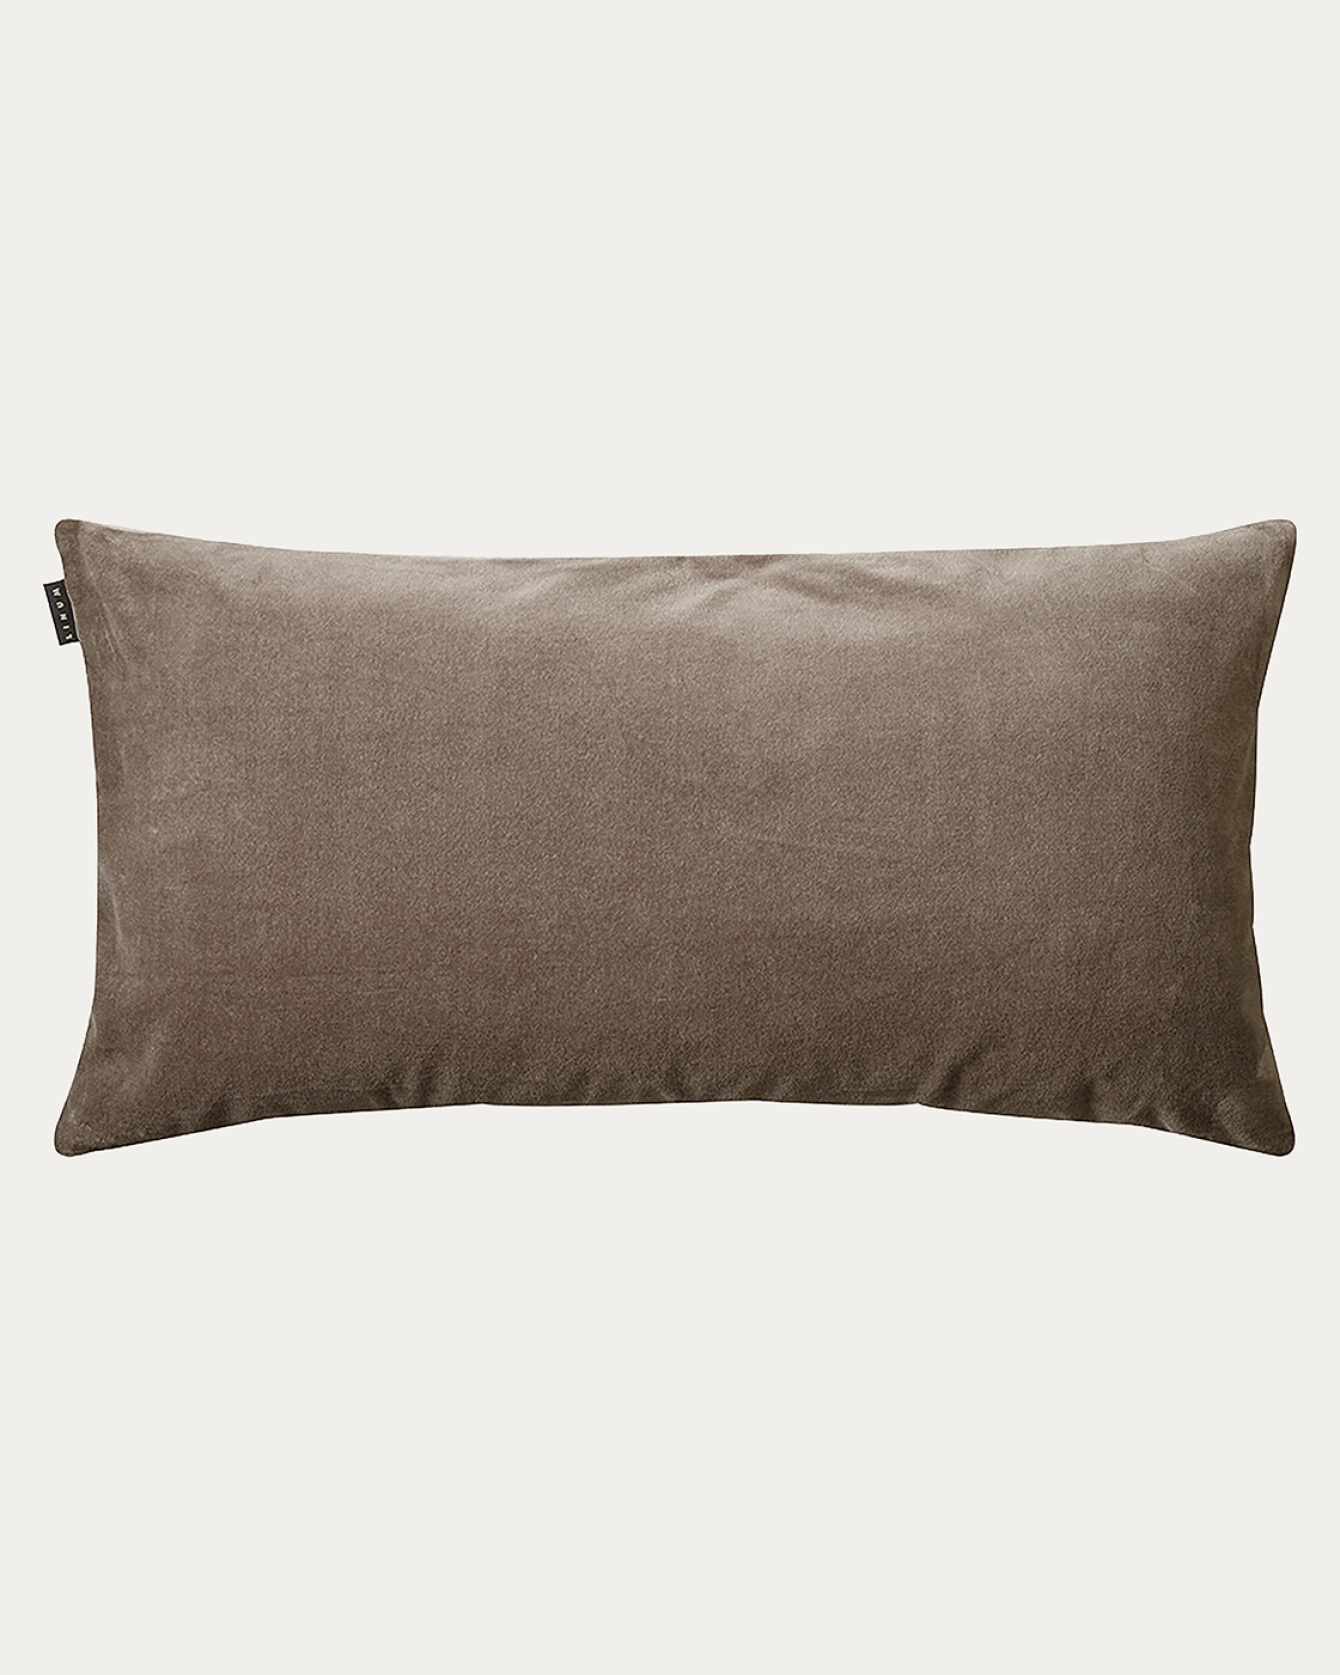 PAOLO Cushion cover 50x90 cm Mole brown